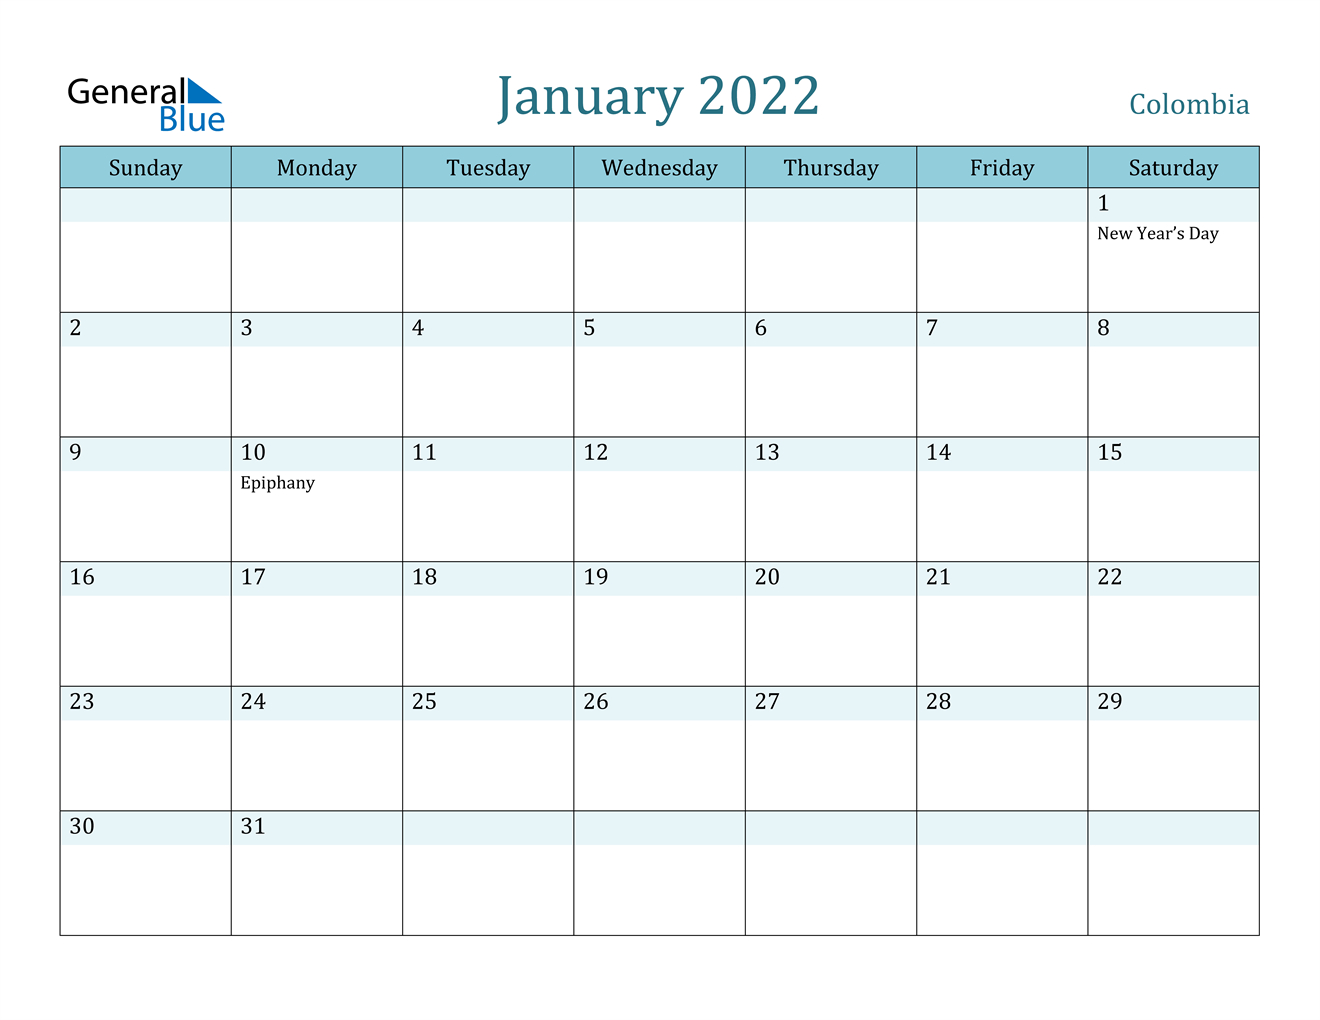 January 2022 Calendar - Colombia  Word Calendar For 2022